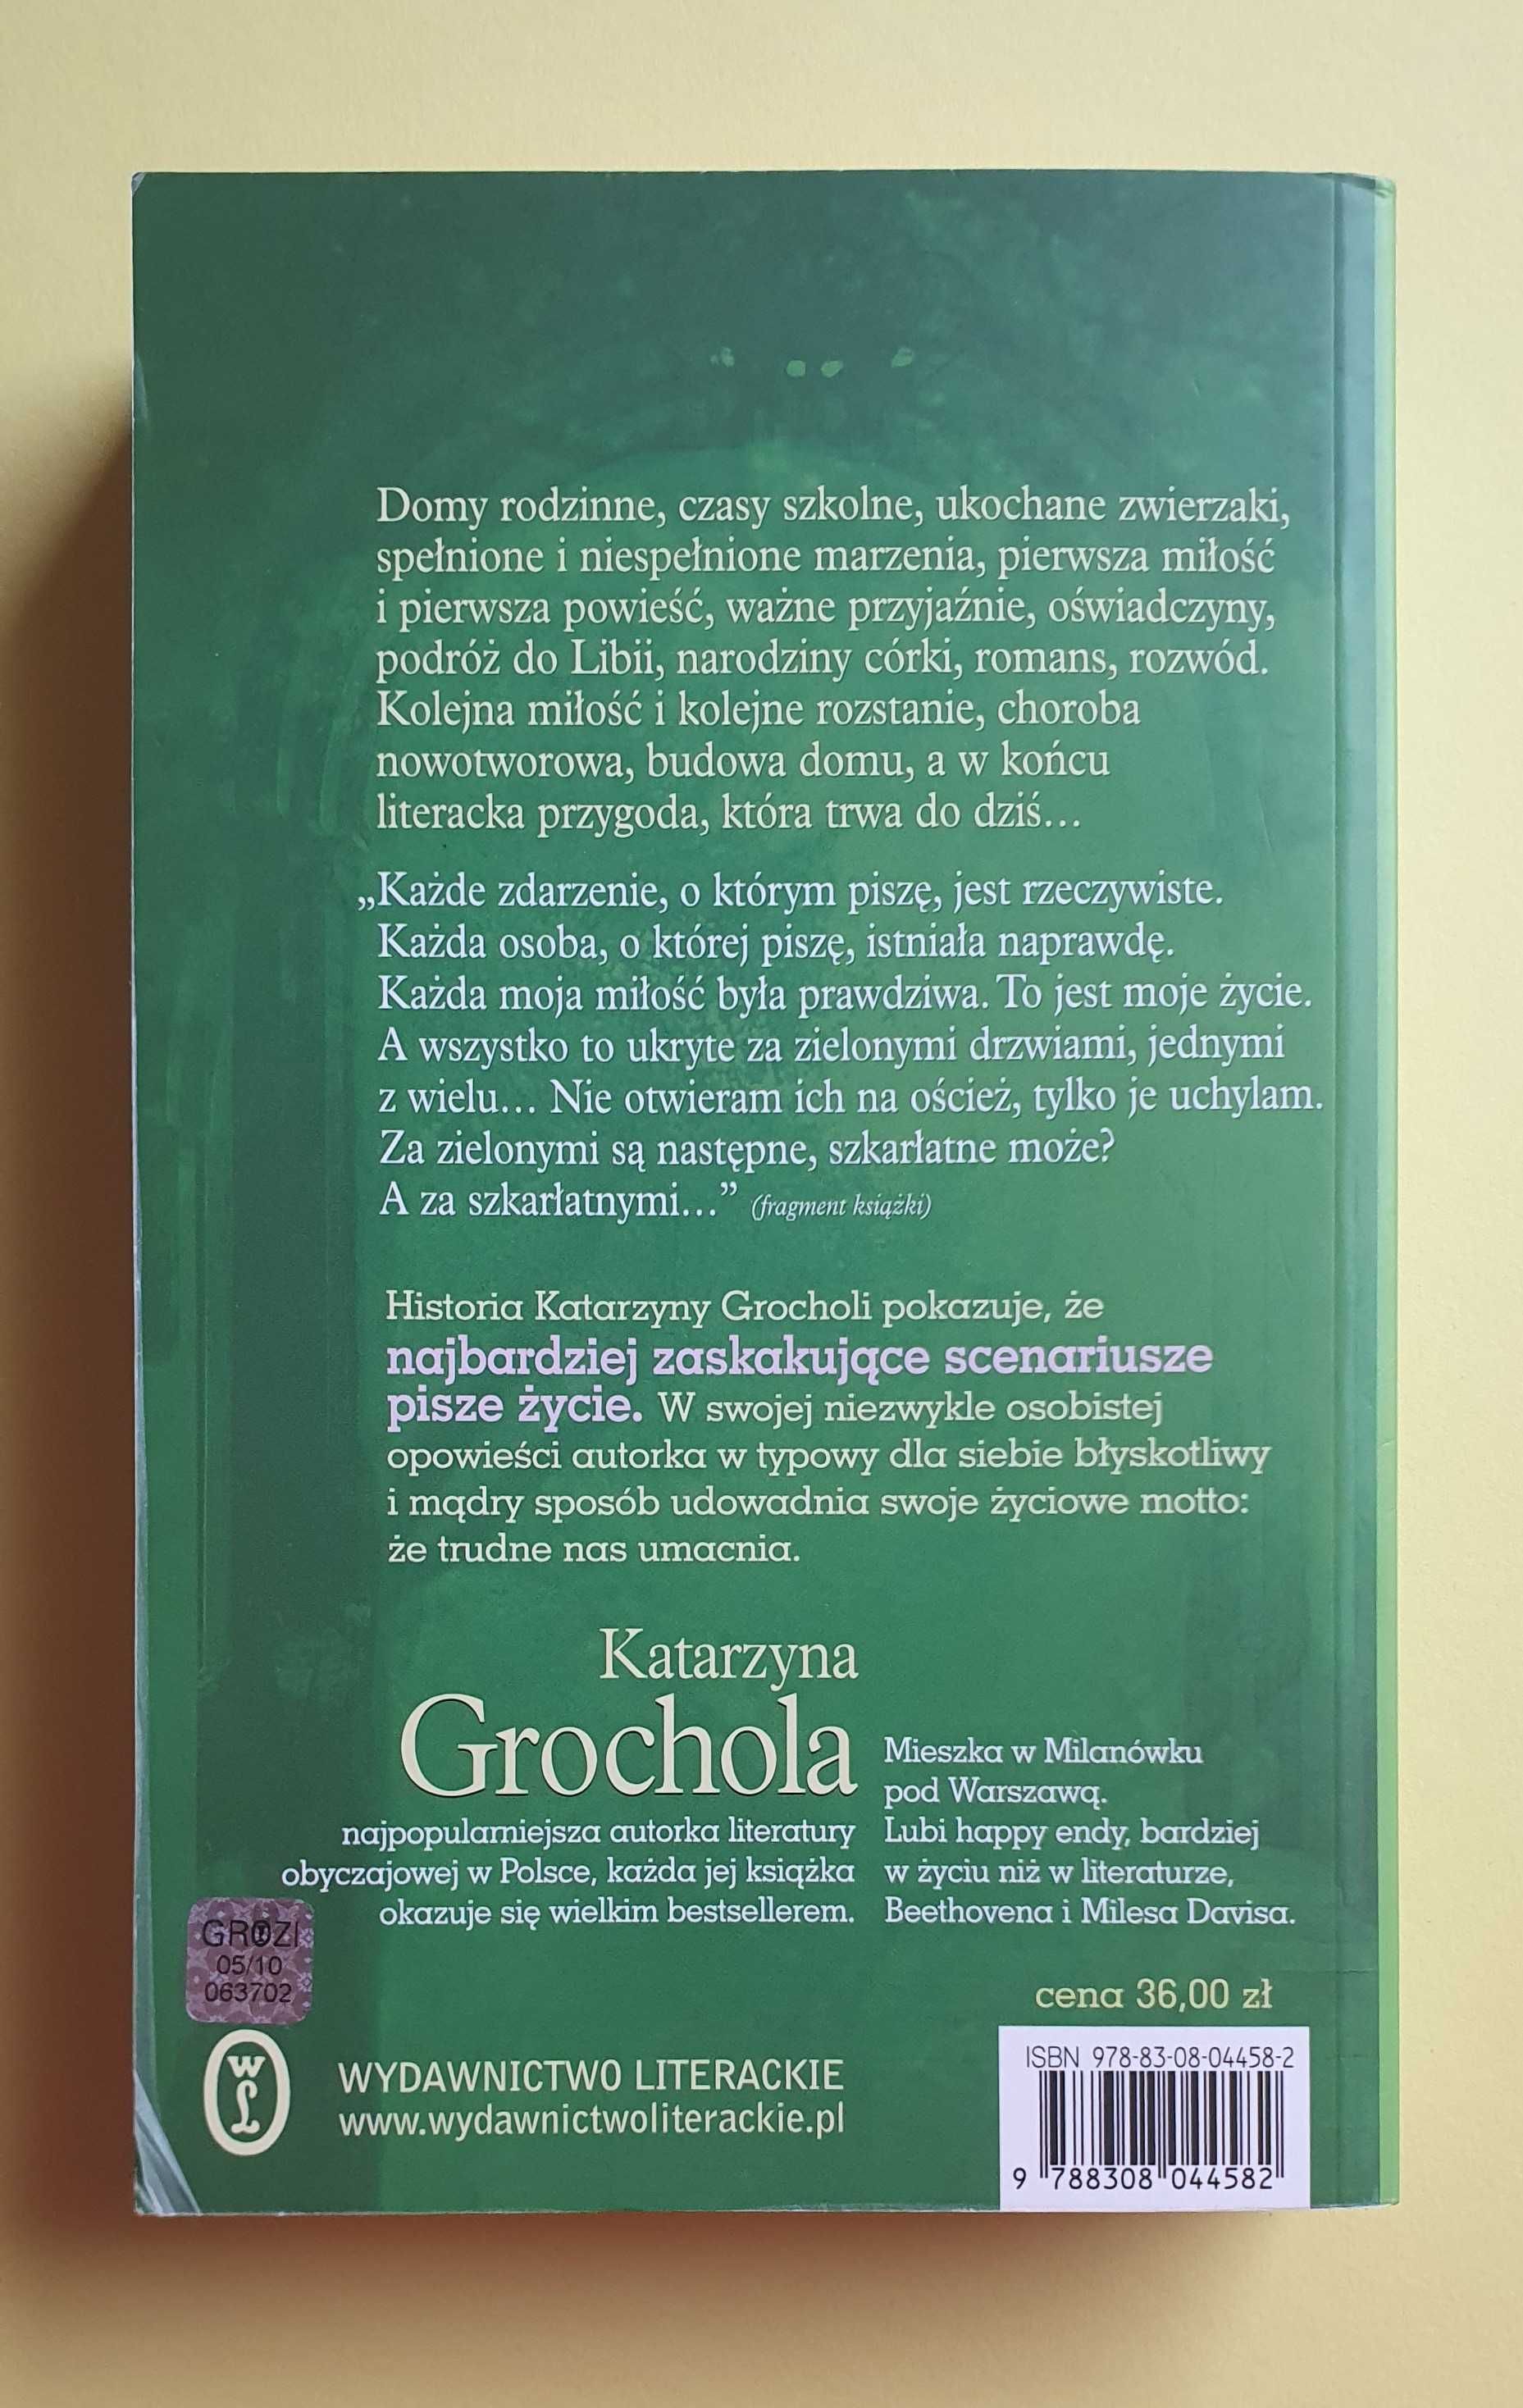 Zielone drzwi - Katarzyna Grochola